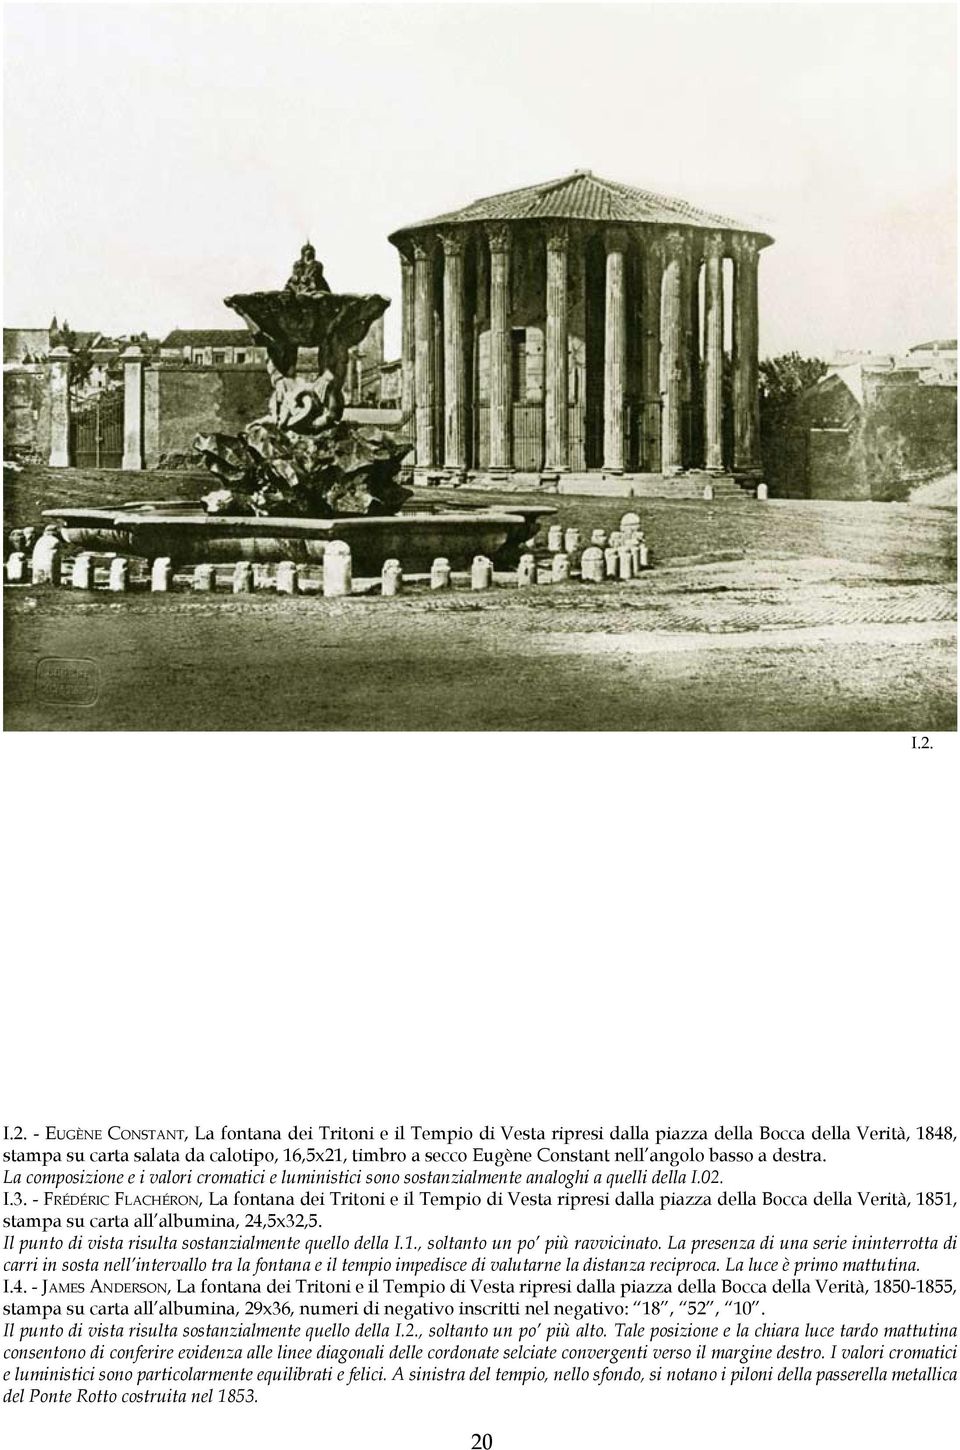 - Fr é d é r i c Fl a c h é r o n, La fontana dei Tritoni e il Tempio di Vesta ripresi dalla piazza della Bocca della Verità, 1851, stampa su carta all albumina, 24,5x32,5.